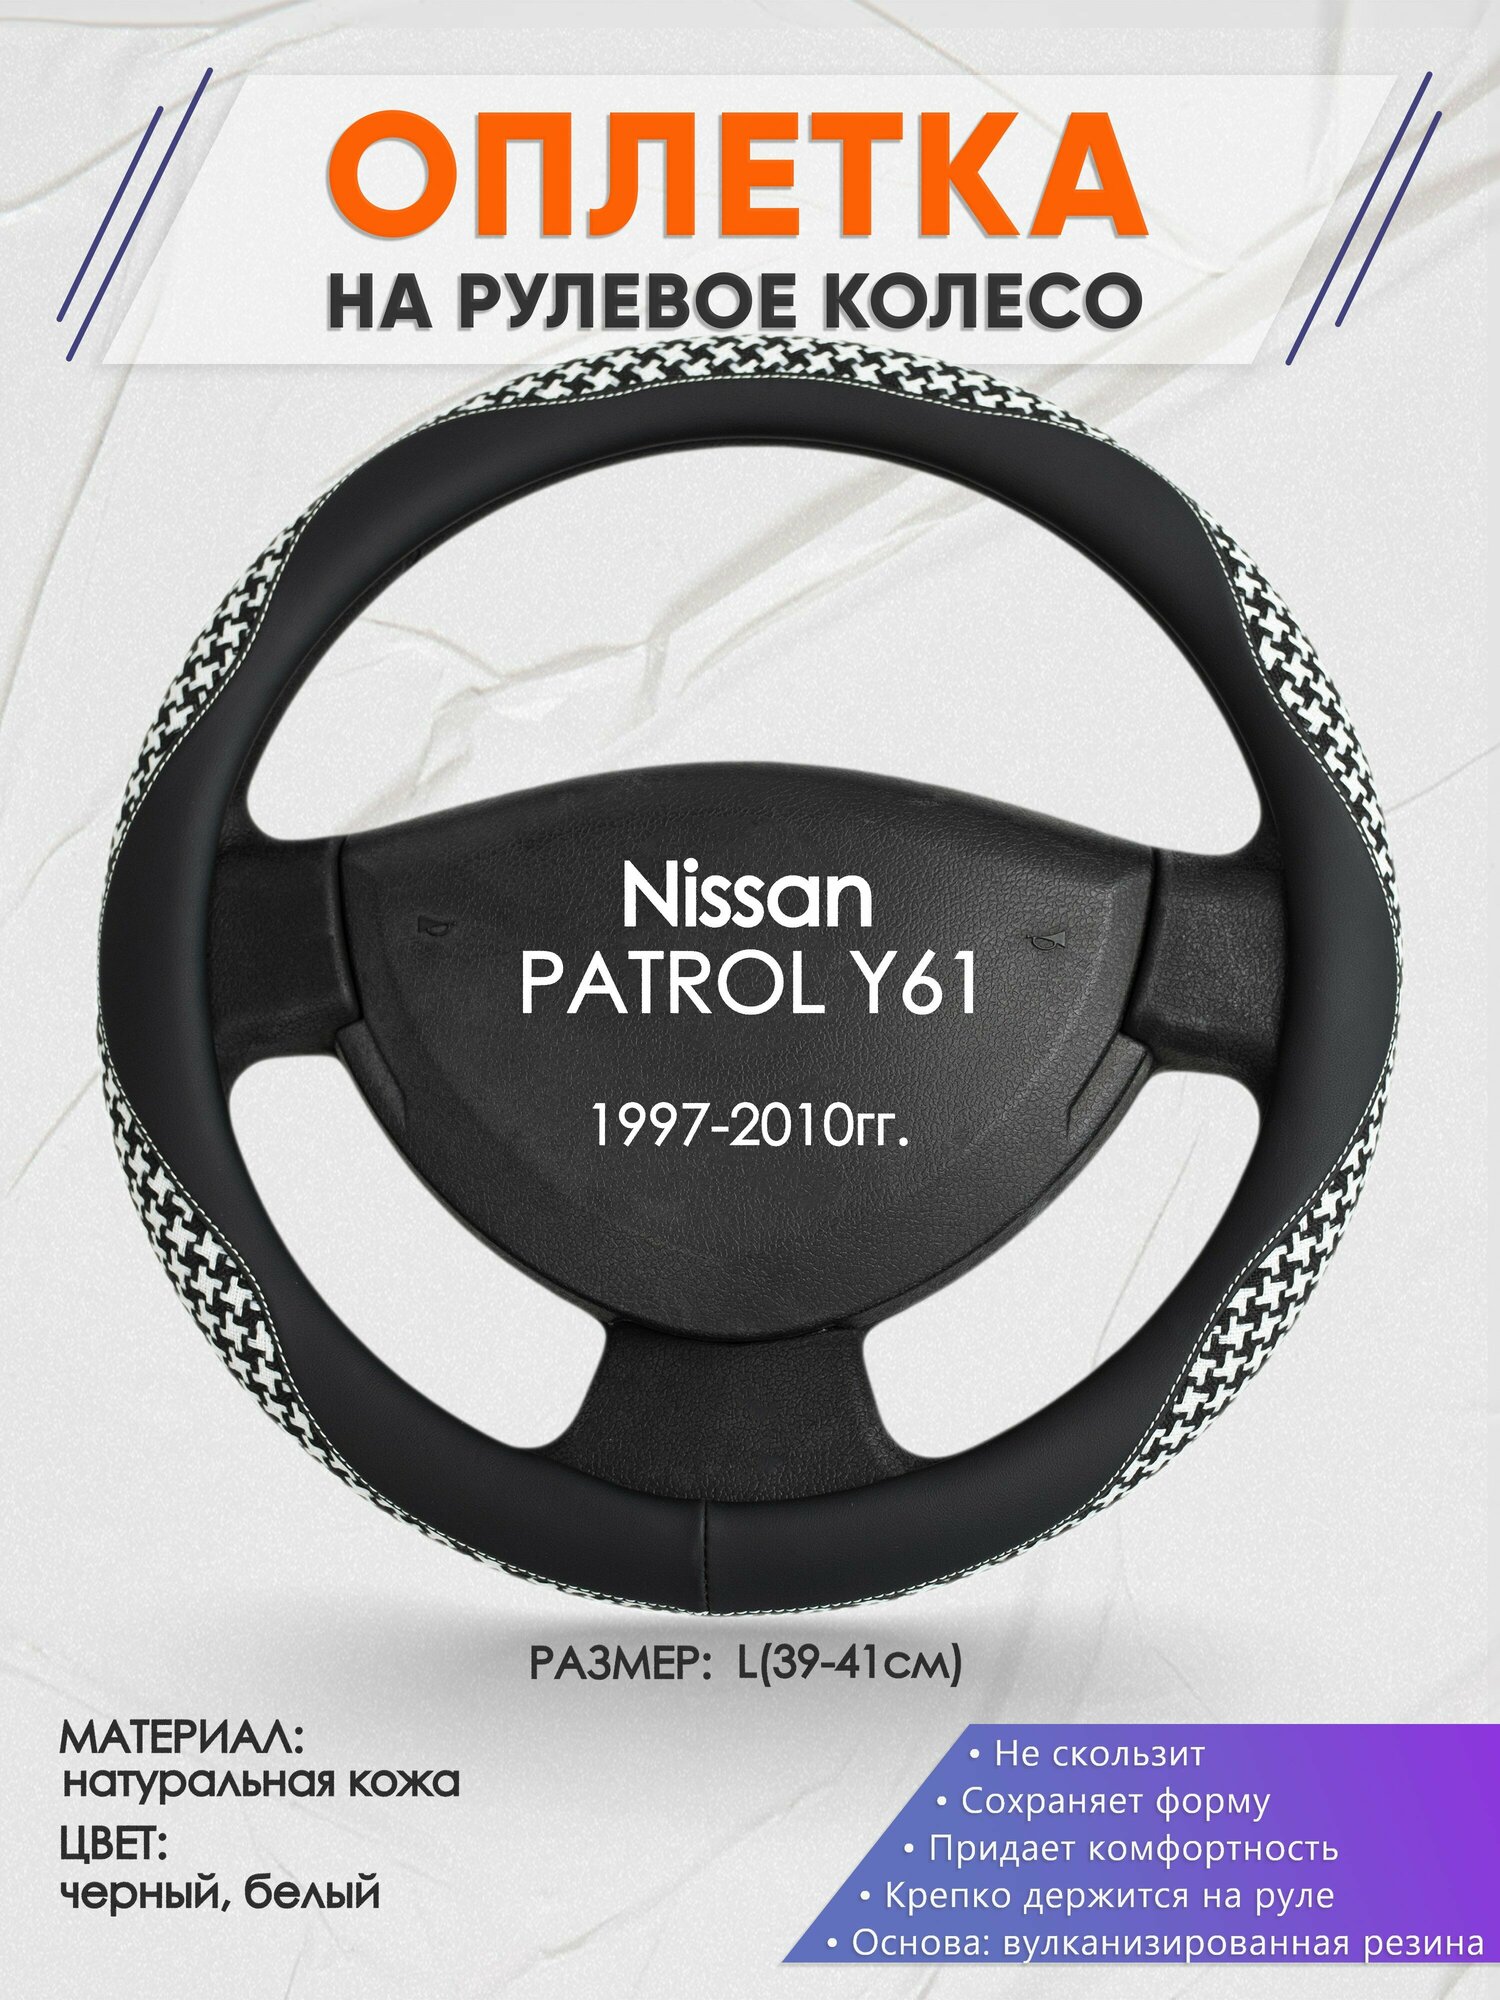 Оплетка на руль для Nissan PATROL Y61(Ниссан Патрол) 1997-2010, L(39-41см), Натуральная кожа 21